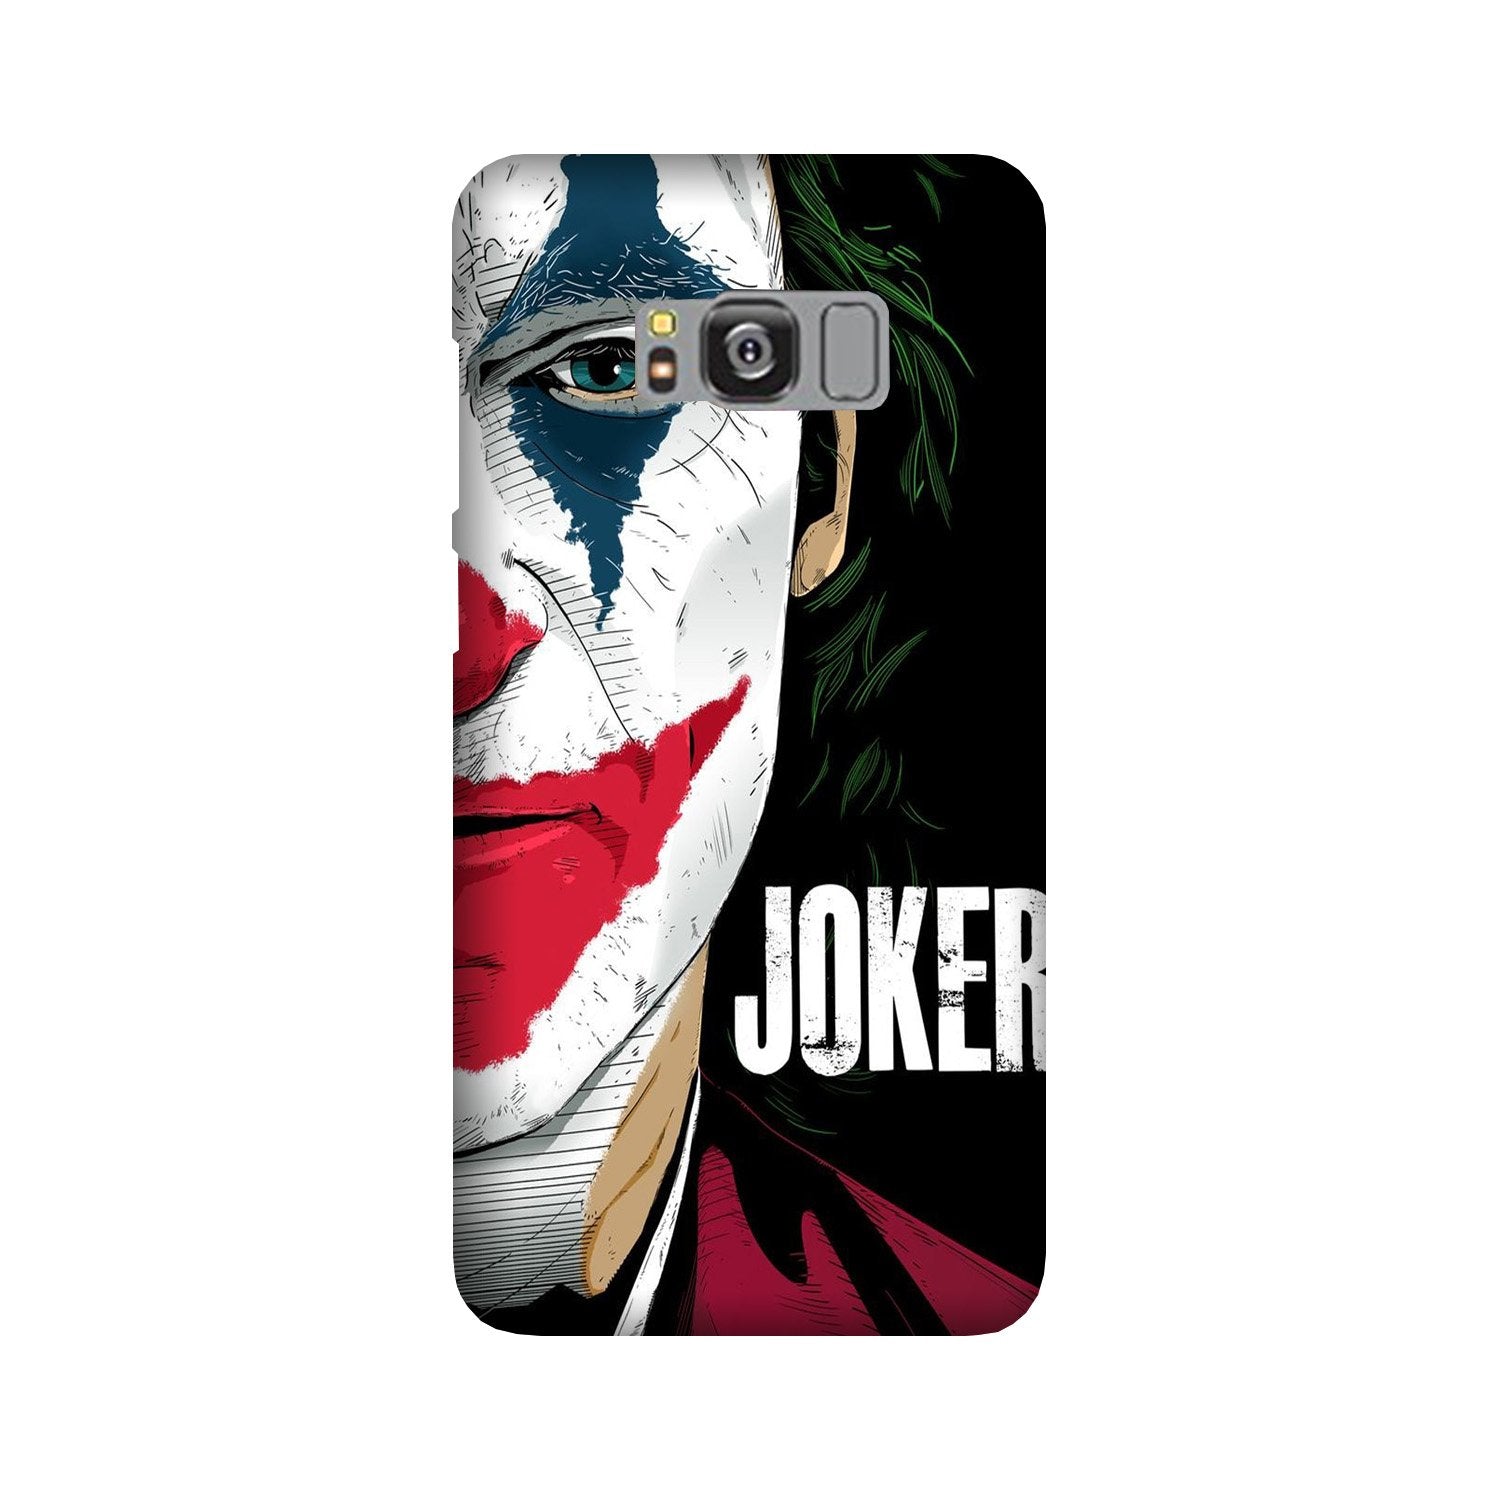 Joker Mobile Back Case for Galaxy S8  (Design - 301)